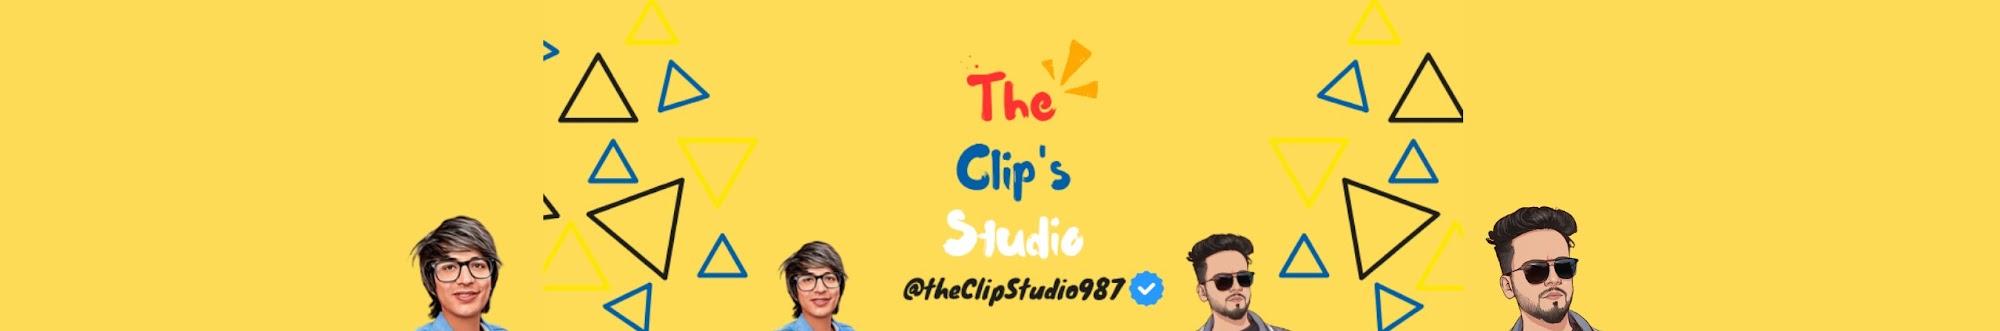 The Clip's Studio